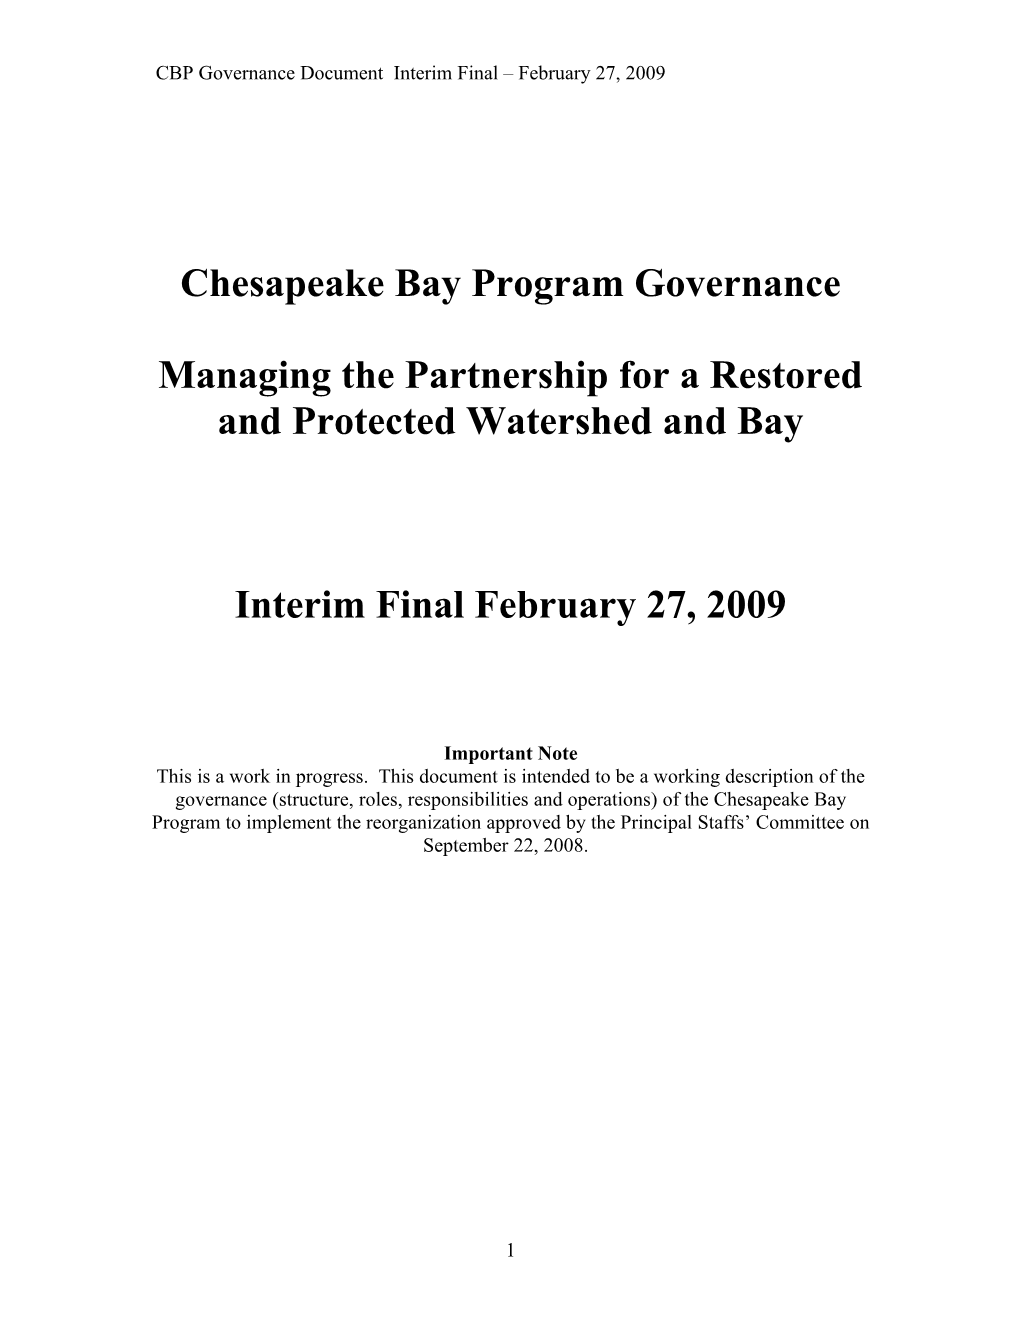 Chesapeake Bay Program Governance